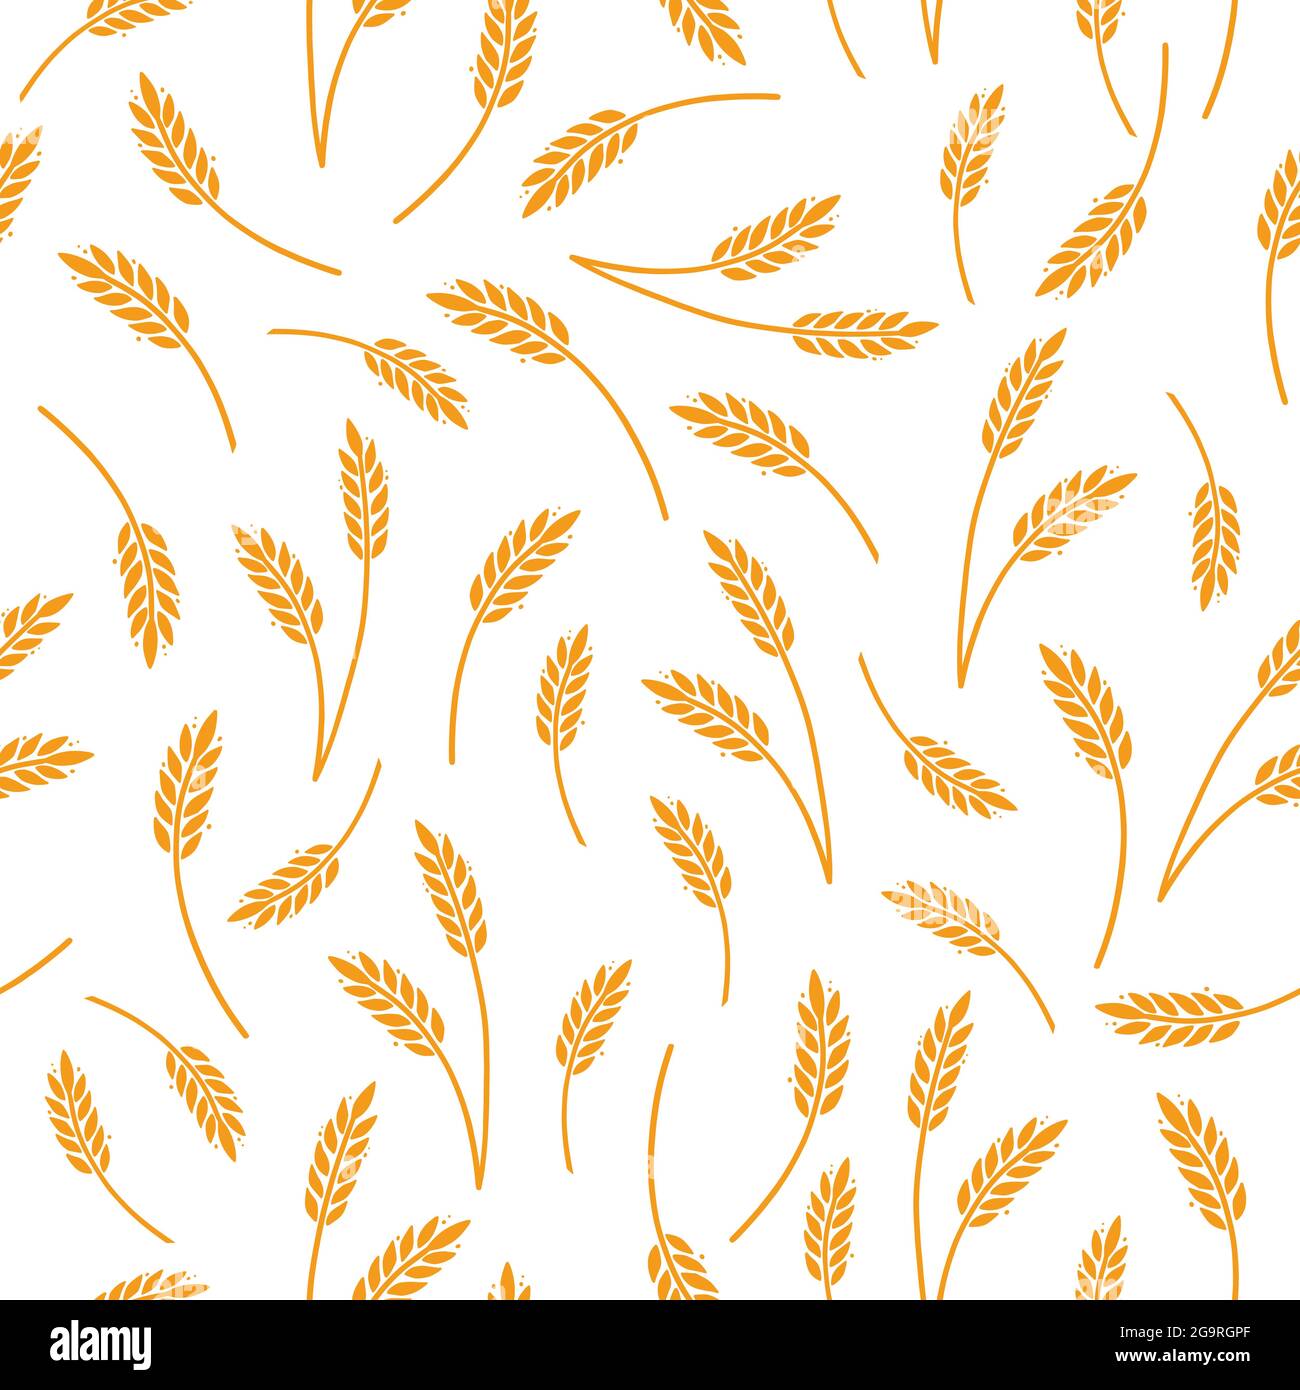 Weizen, Gerste, Reismuster für Getreideuntergrund. Handgezeichnetes, nahtloses Muster im Skizzenstil. Vektorgrafik Weizen. Stock Vektor